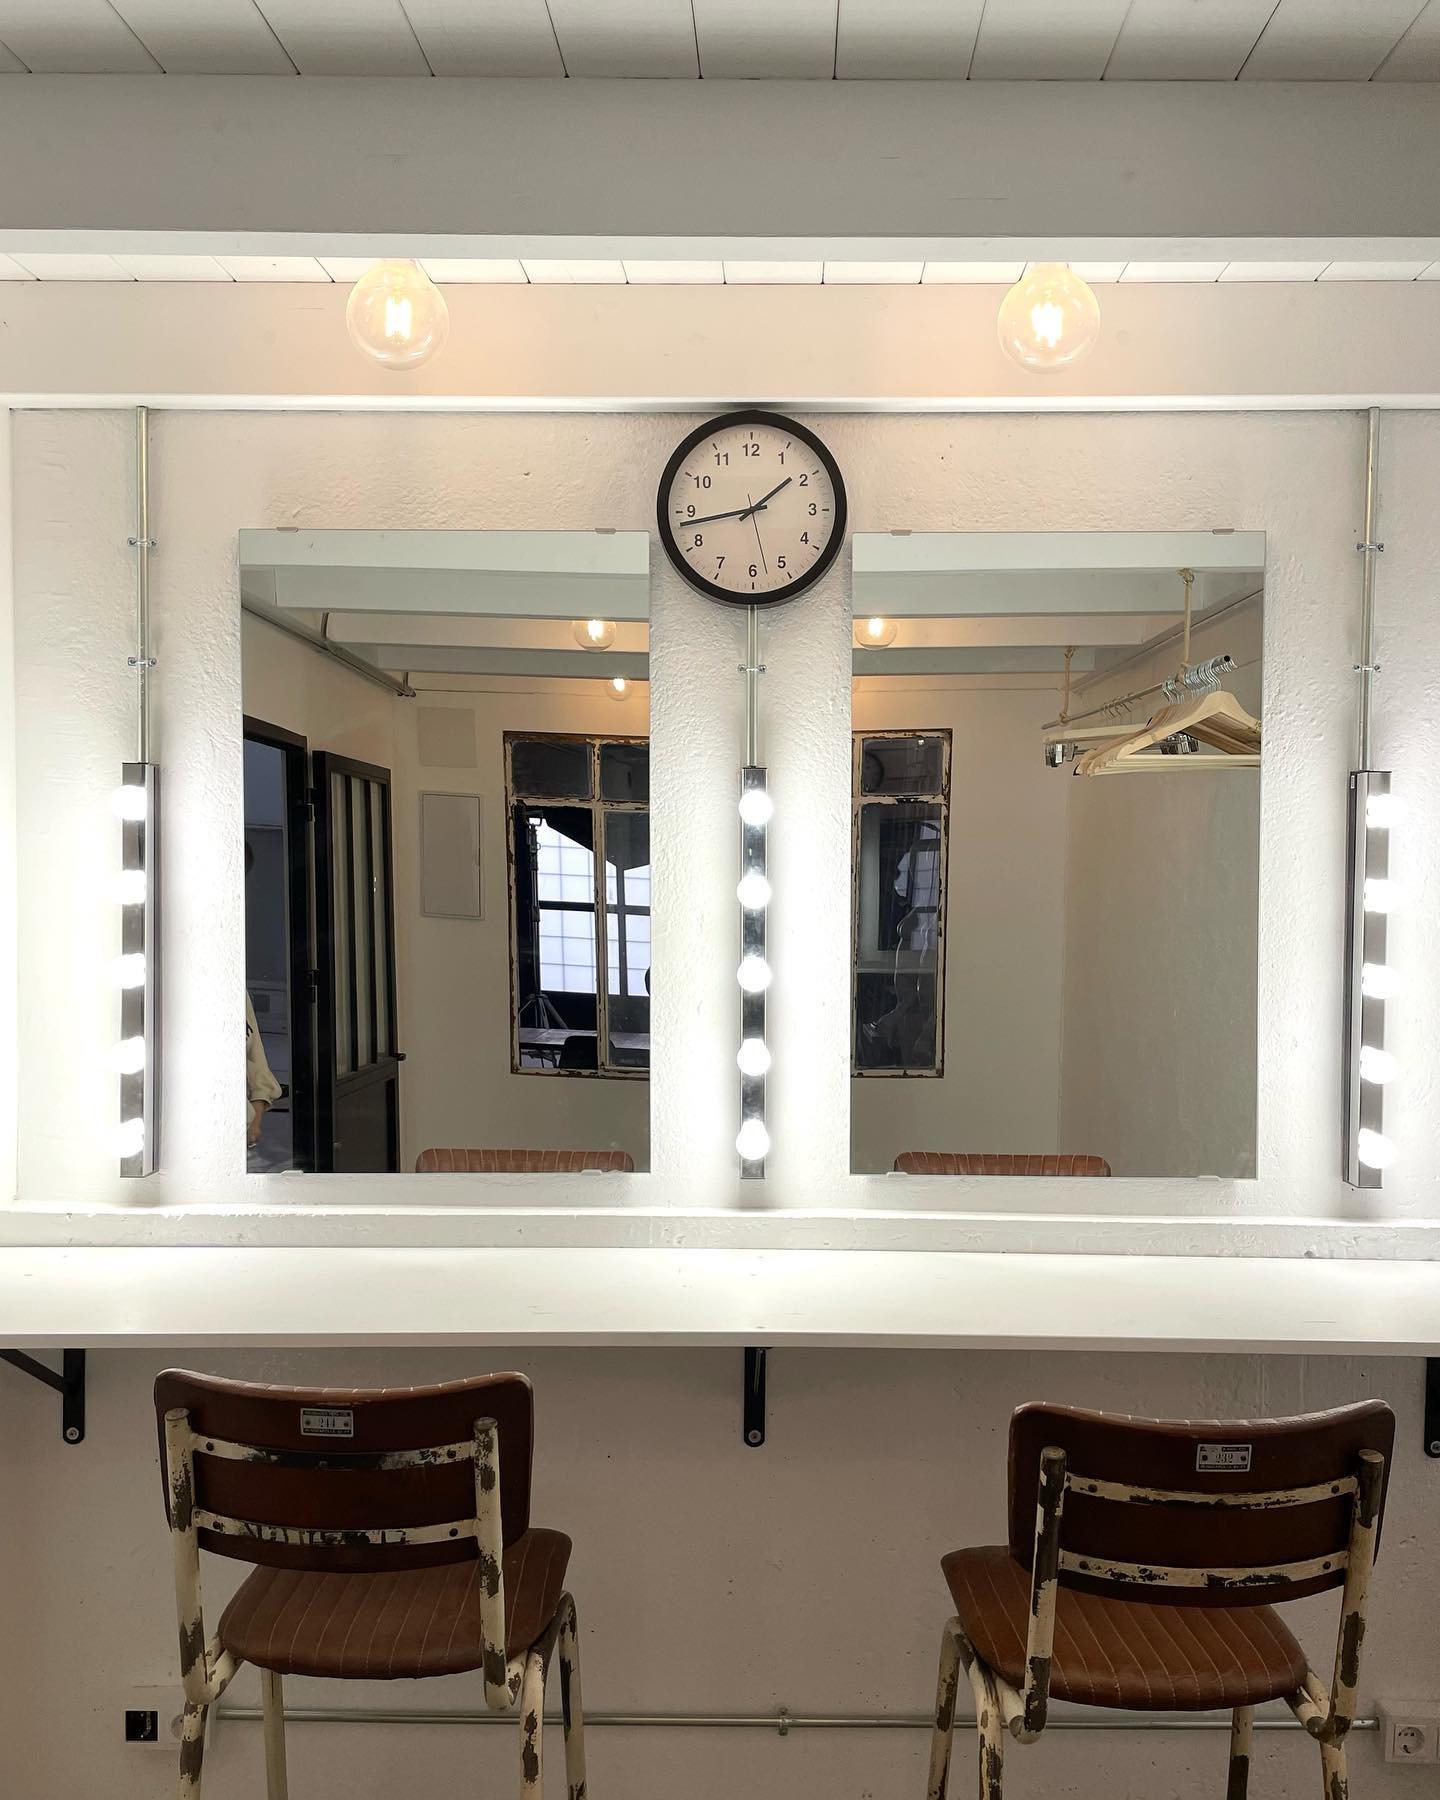 La sala de procesos ya tiene dos cosas imprescindibles. Buena luz y reloj! Para que a nuestros amigos estilistas no se despisten 😎💛
.
.
.
#rufiogaraje #madrid